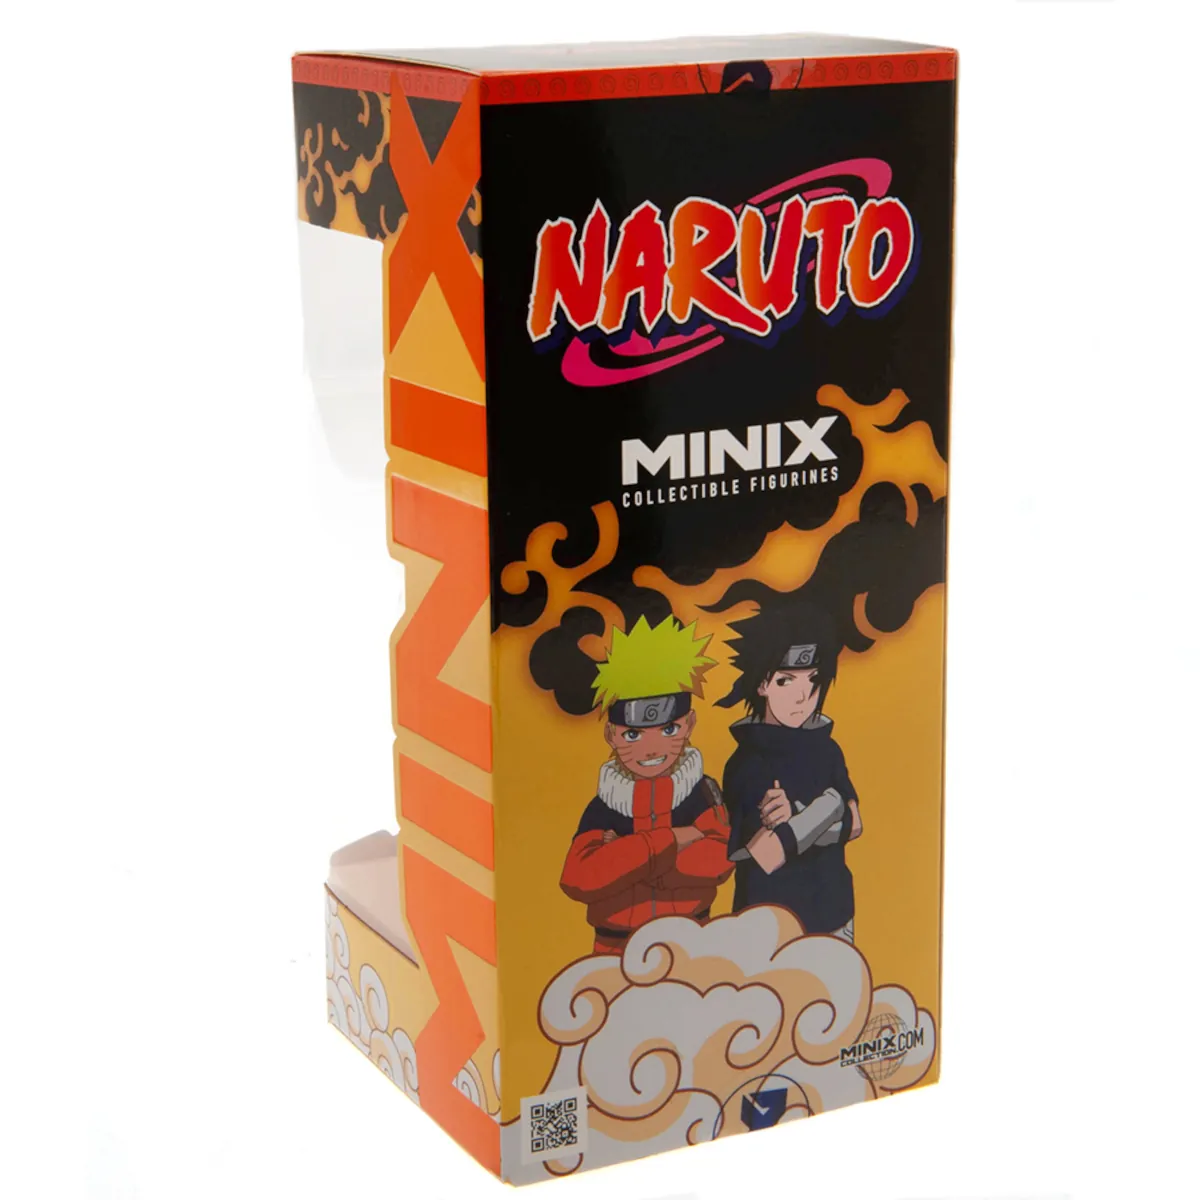 Naruto Shippuden 12cm MINIX Collectable Figure Box Back